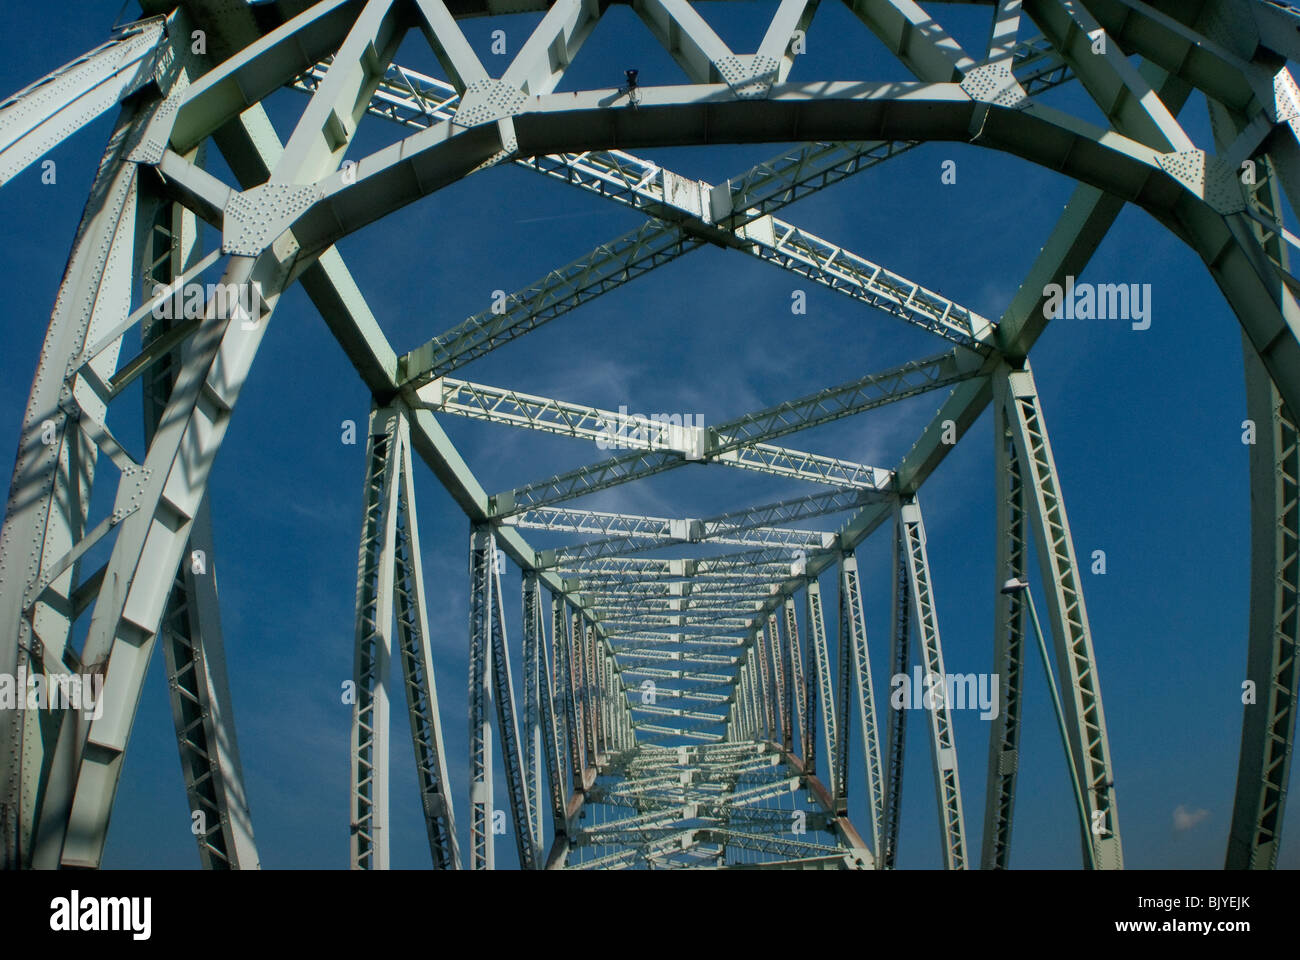 The steel girders in a cobweb shape for the single arch Runcorn Bridge Stock Photo